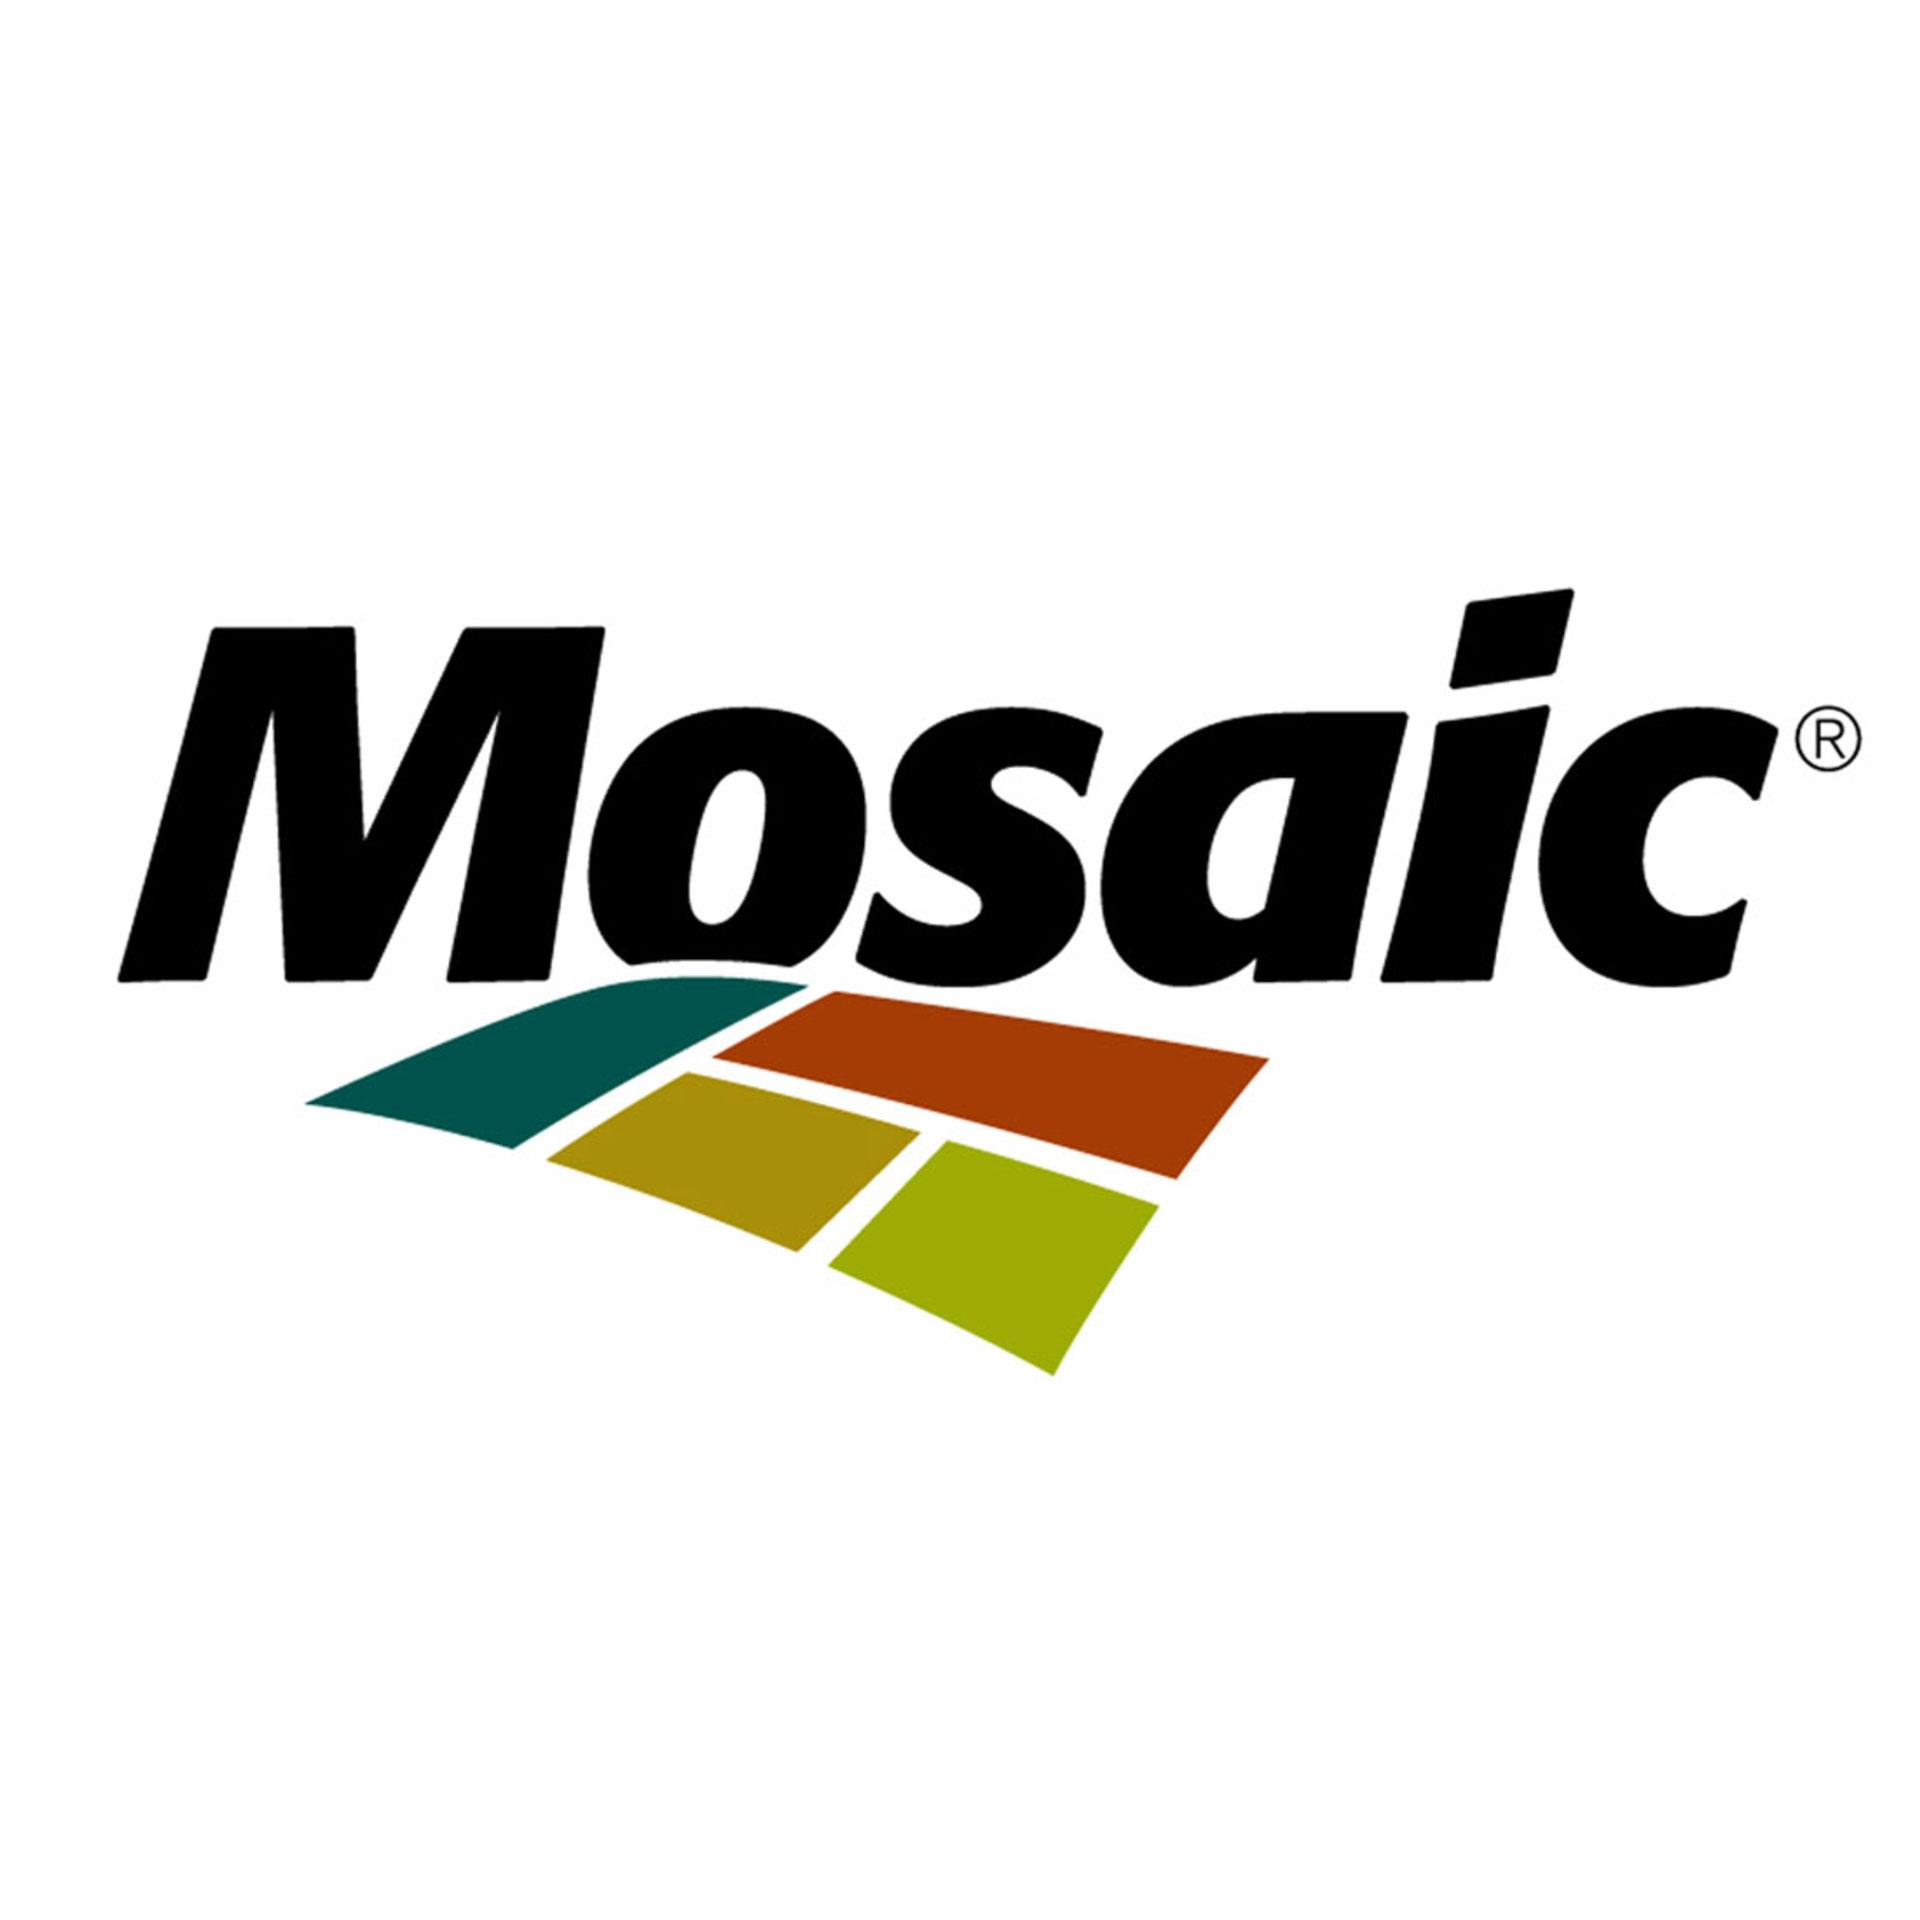 Key partner: Mosaic